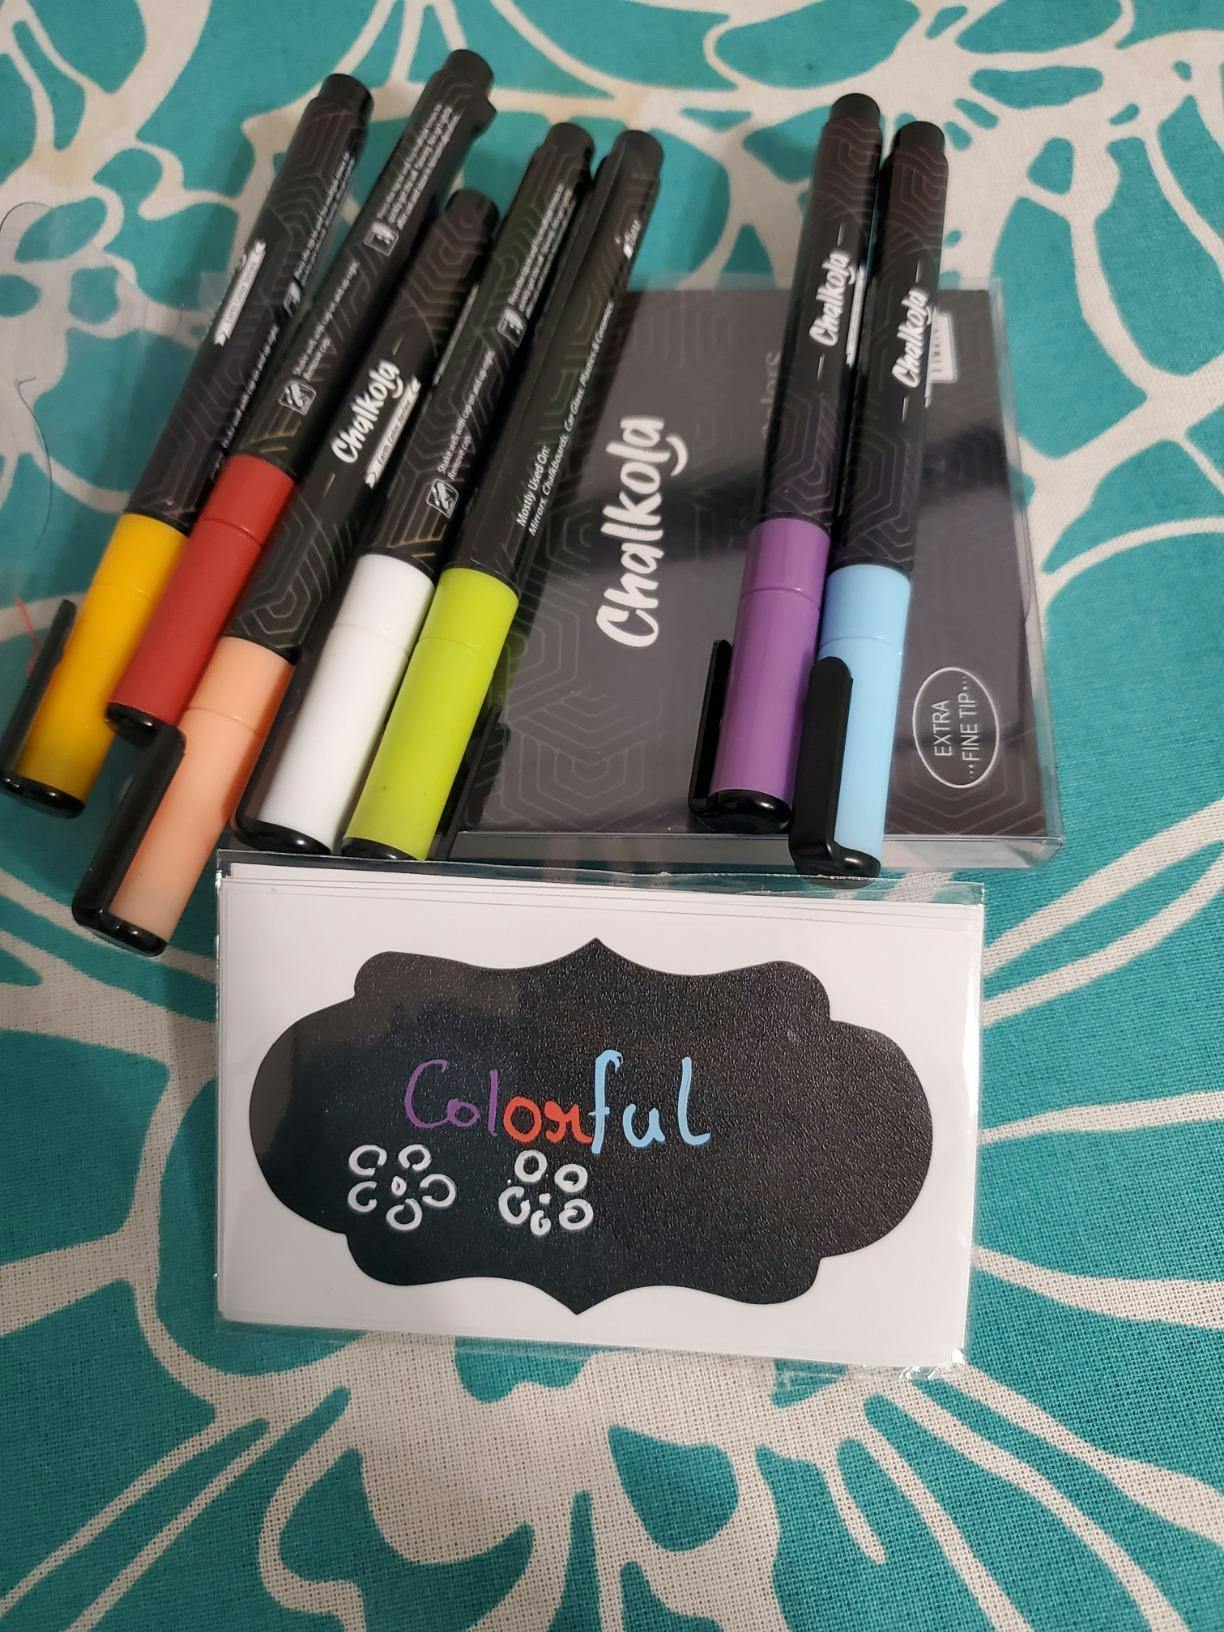 Fine Tip Best Blush 1mm Wet Wipe Chalk Markers